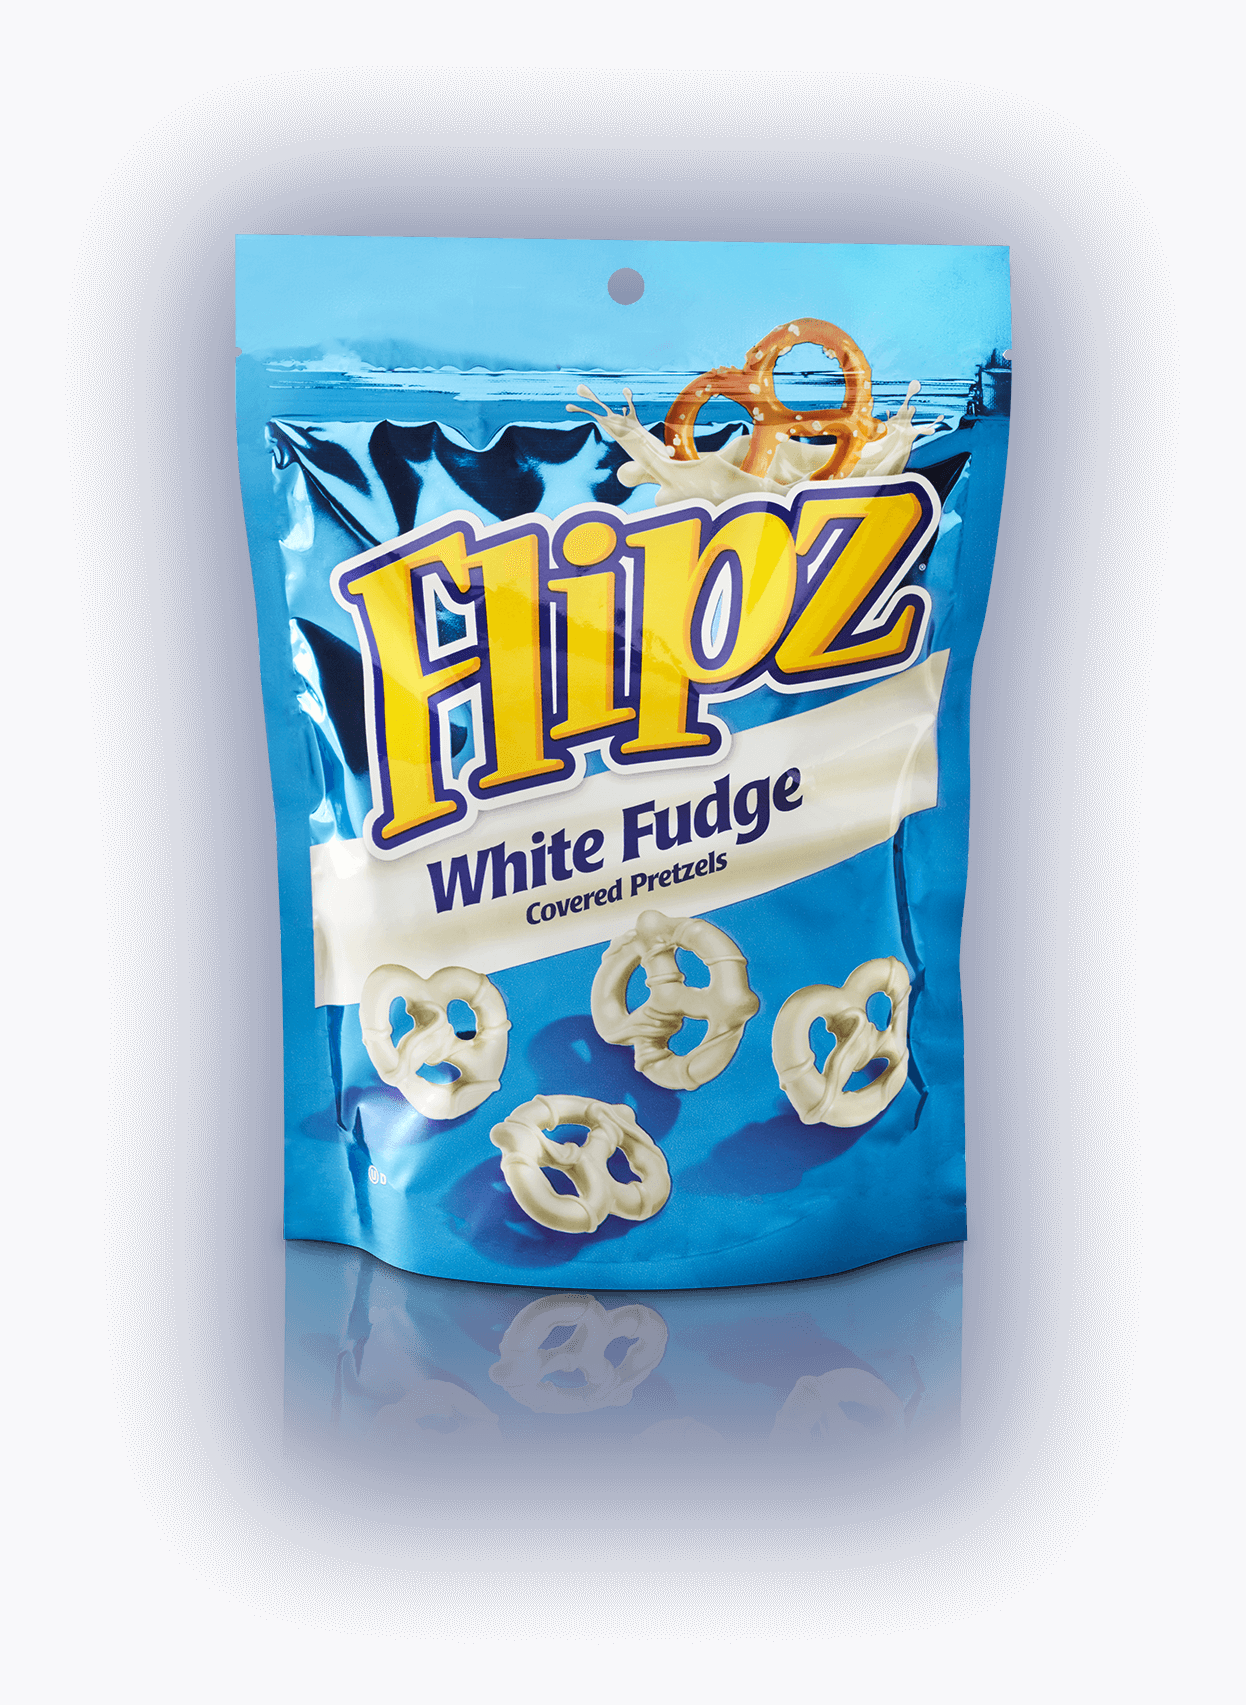 Bag of white fudge covered pretzels